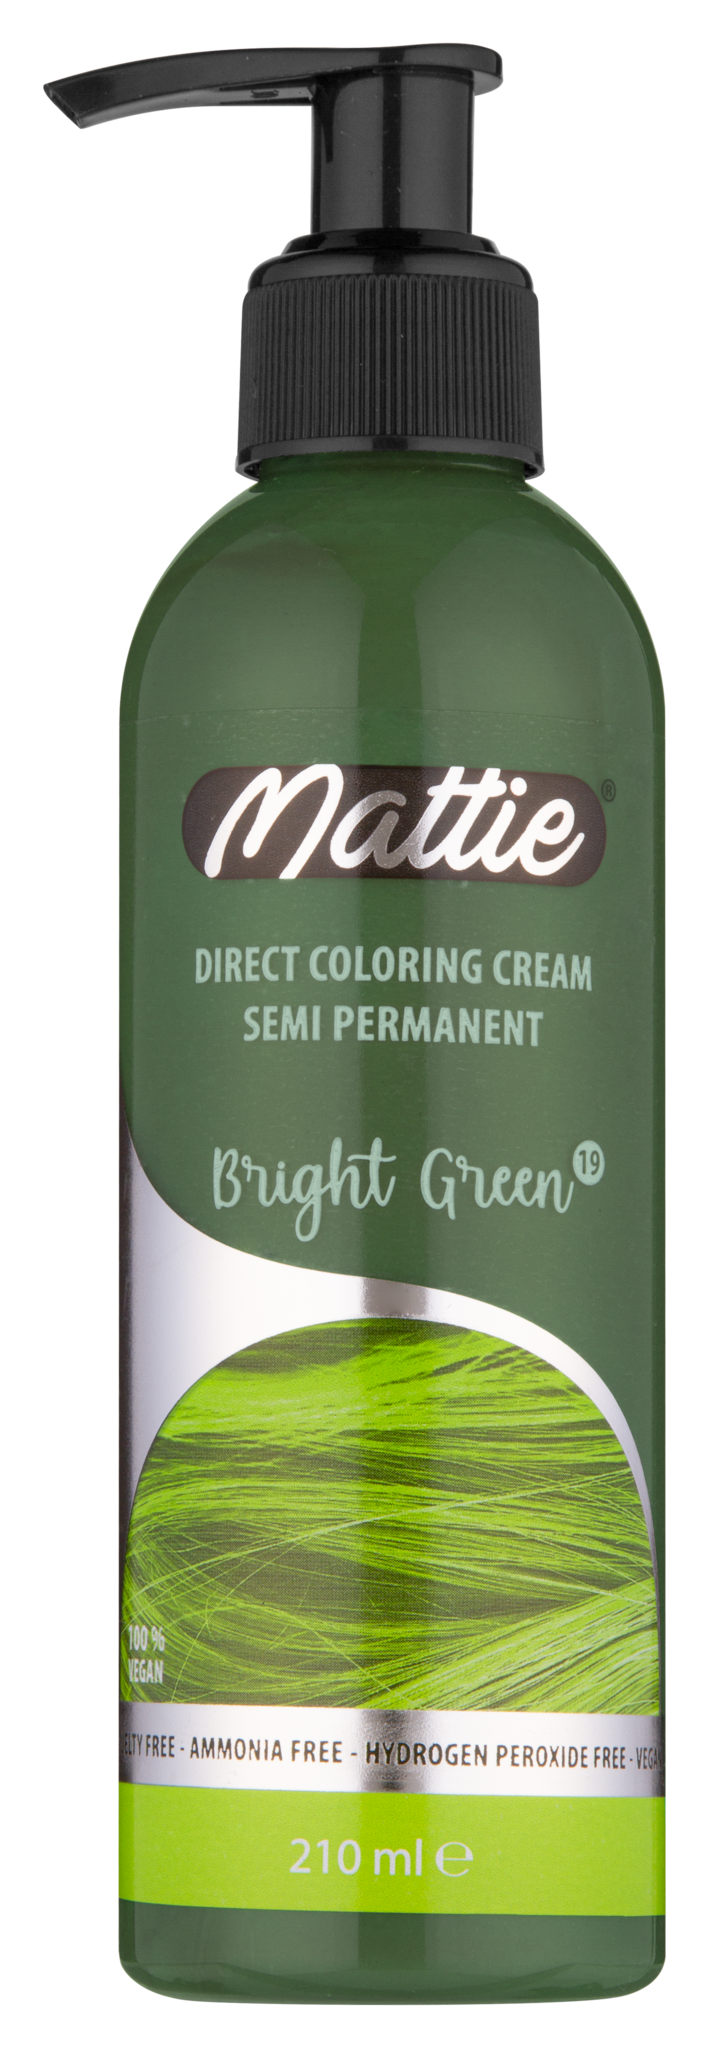 Mattie Direct Coloring Cream Semi-Permanent - Bright Green 210ml